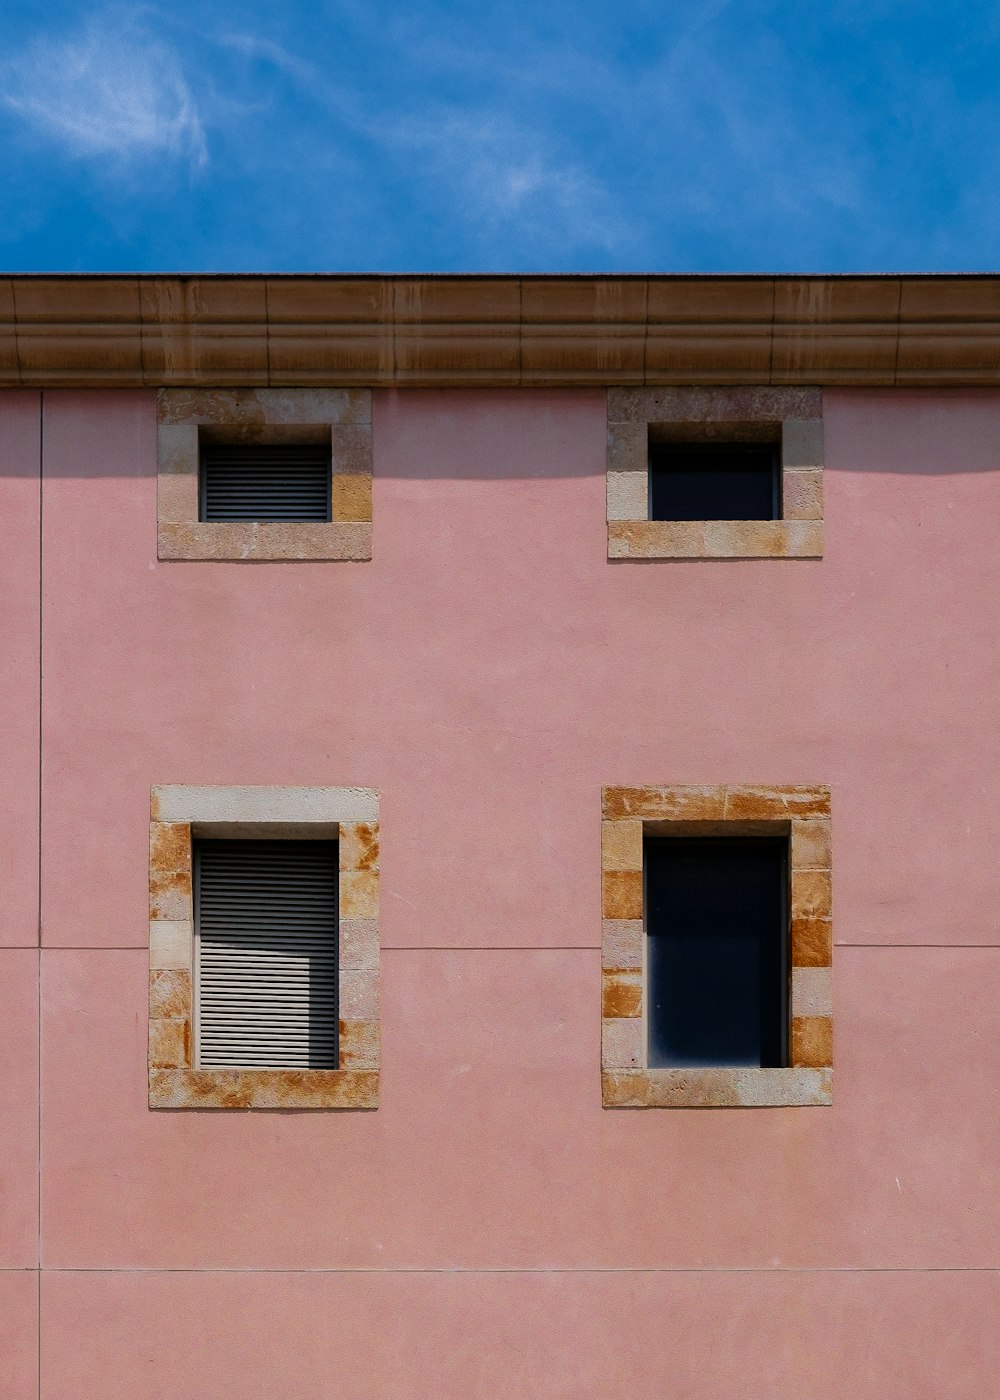 4つの窓を持つコンクリートの建物のミニマルな写真